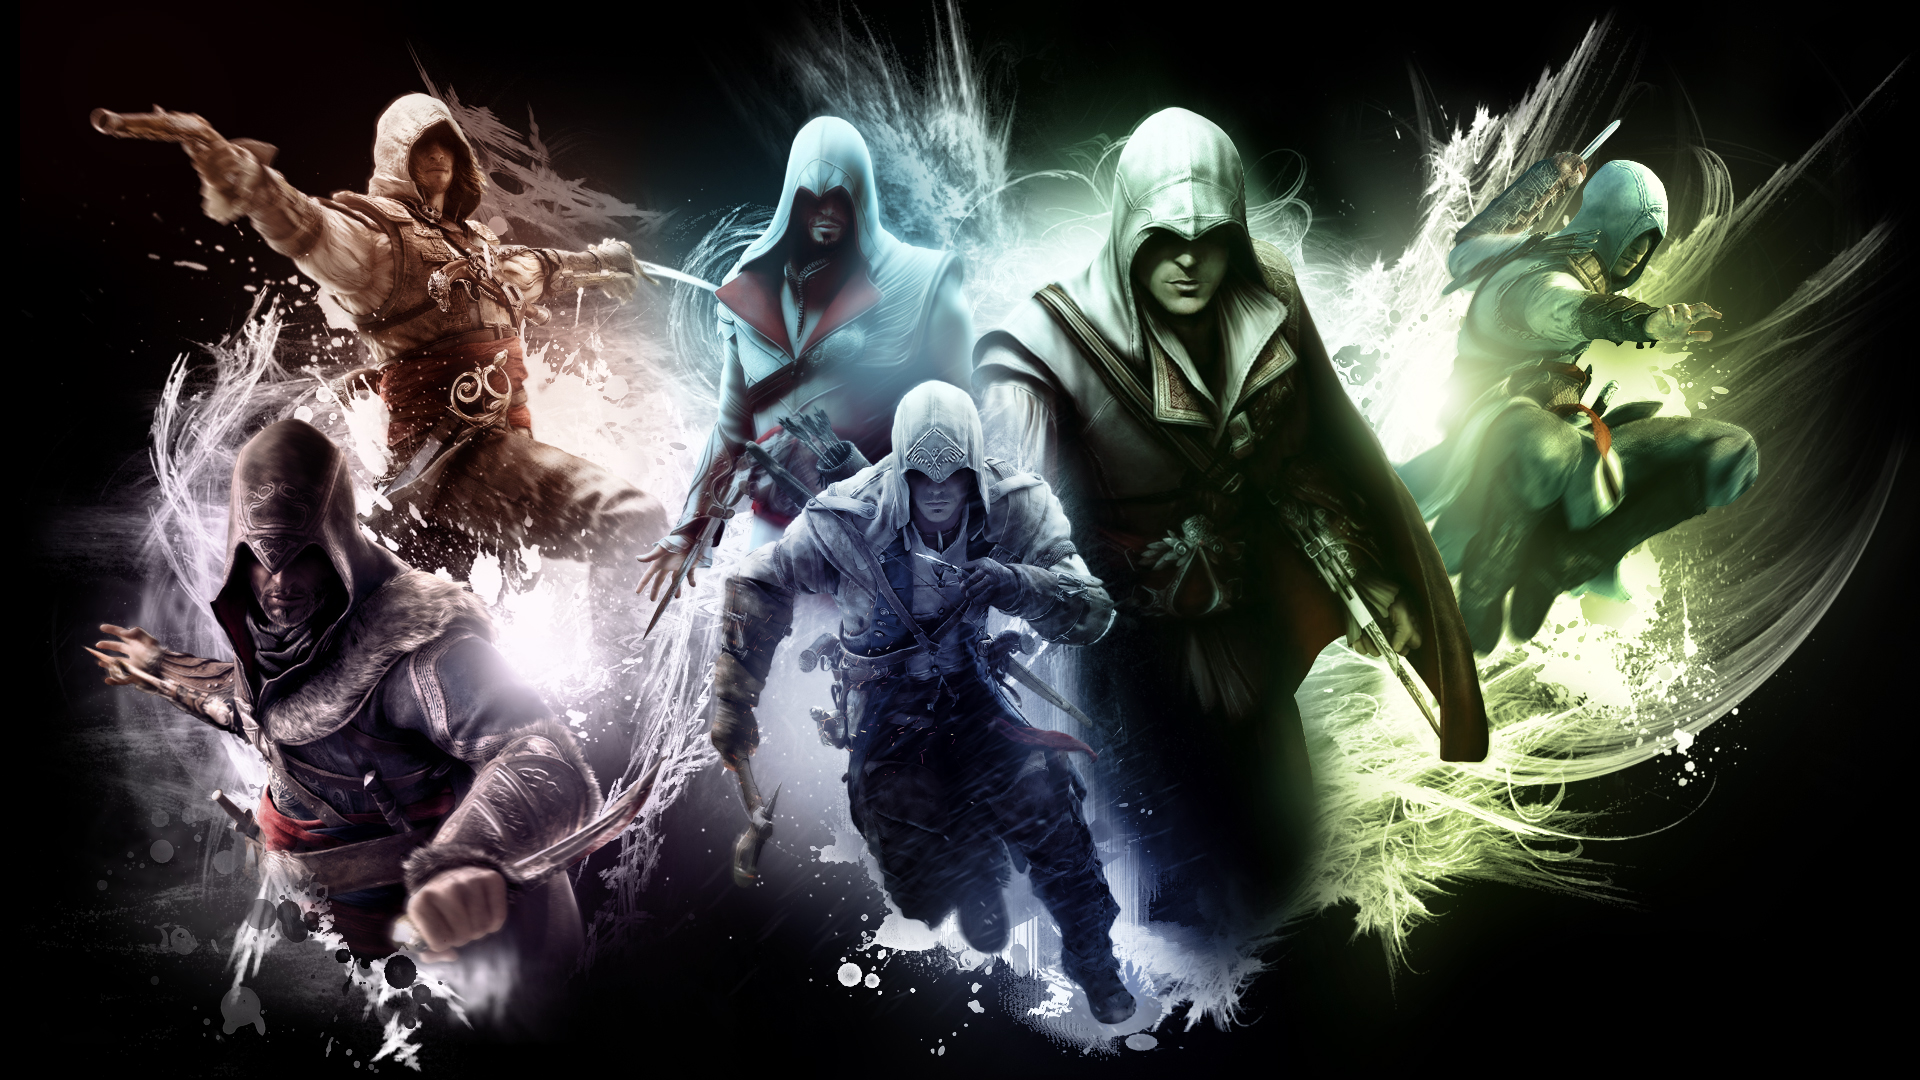 assassin creed fondos de pantalla hd 1080p,cg artwork,juego de acción y aventura,oscuridad,diseño gráfico,personaje de ficción